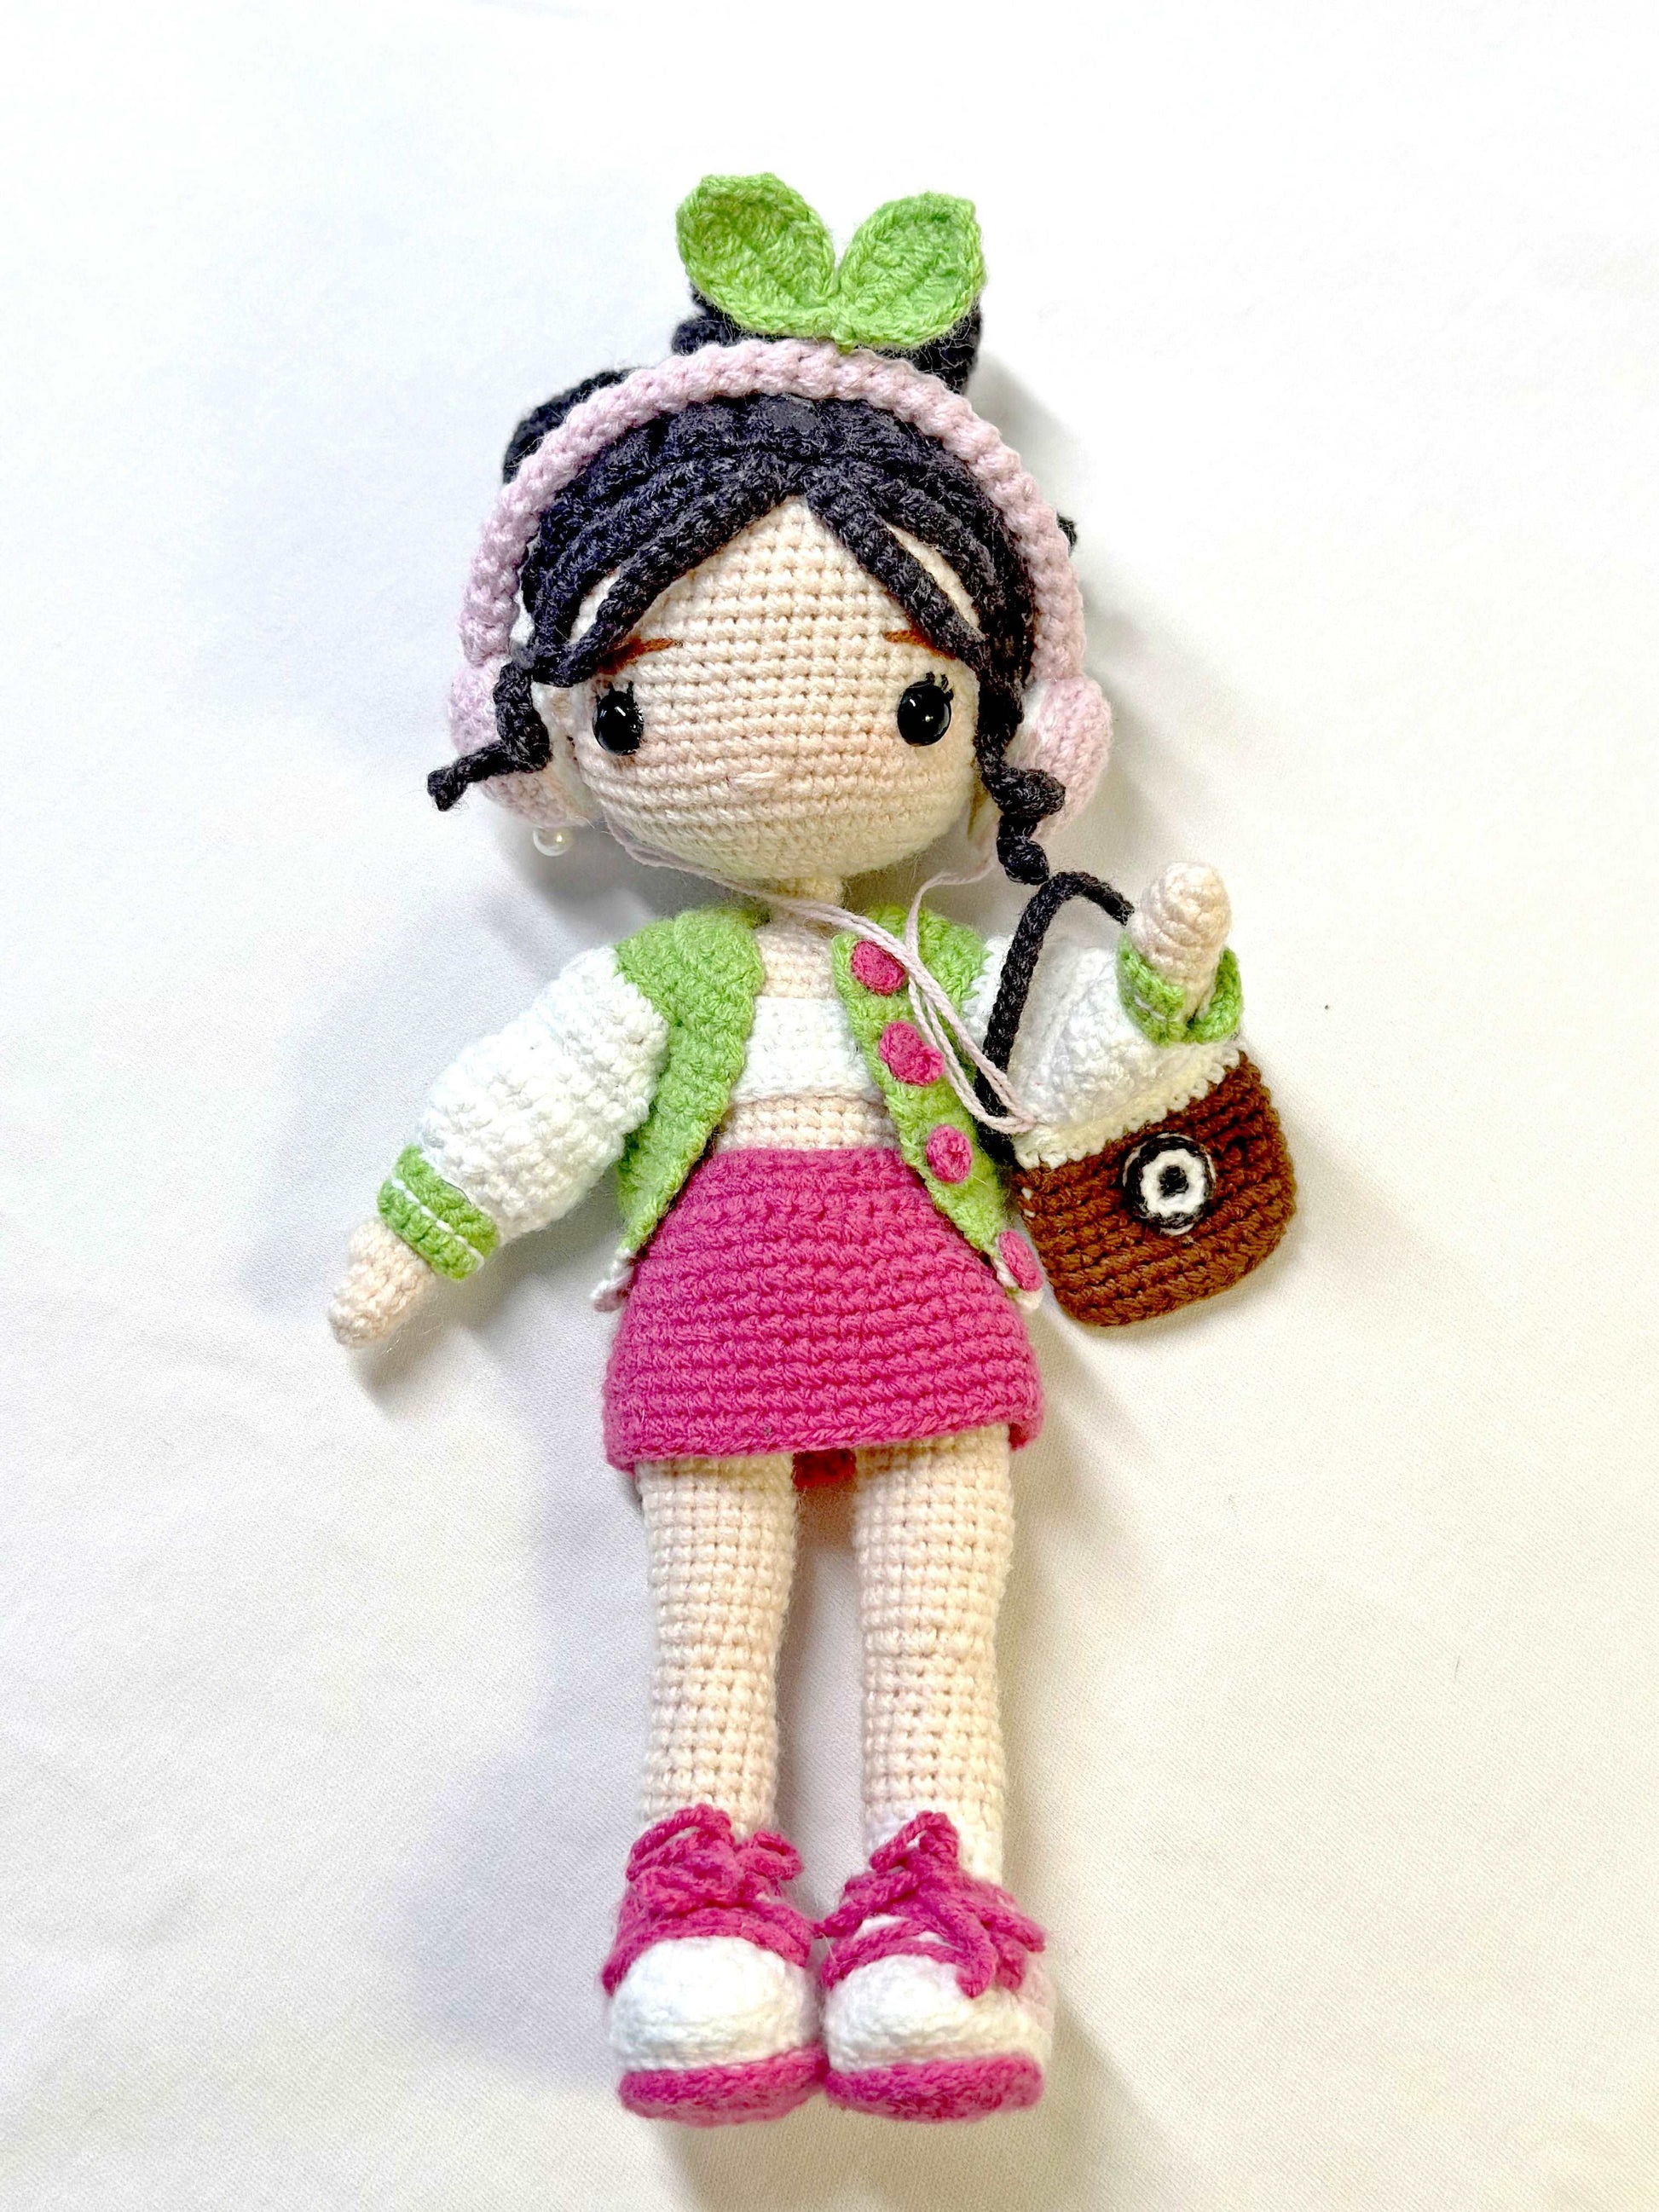 Artistic Crocheted Girl Doll for Room Embellishment